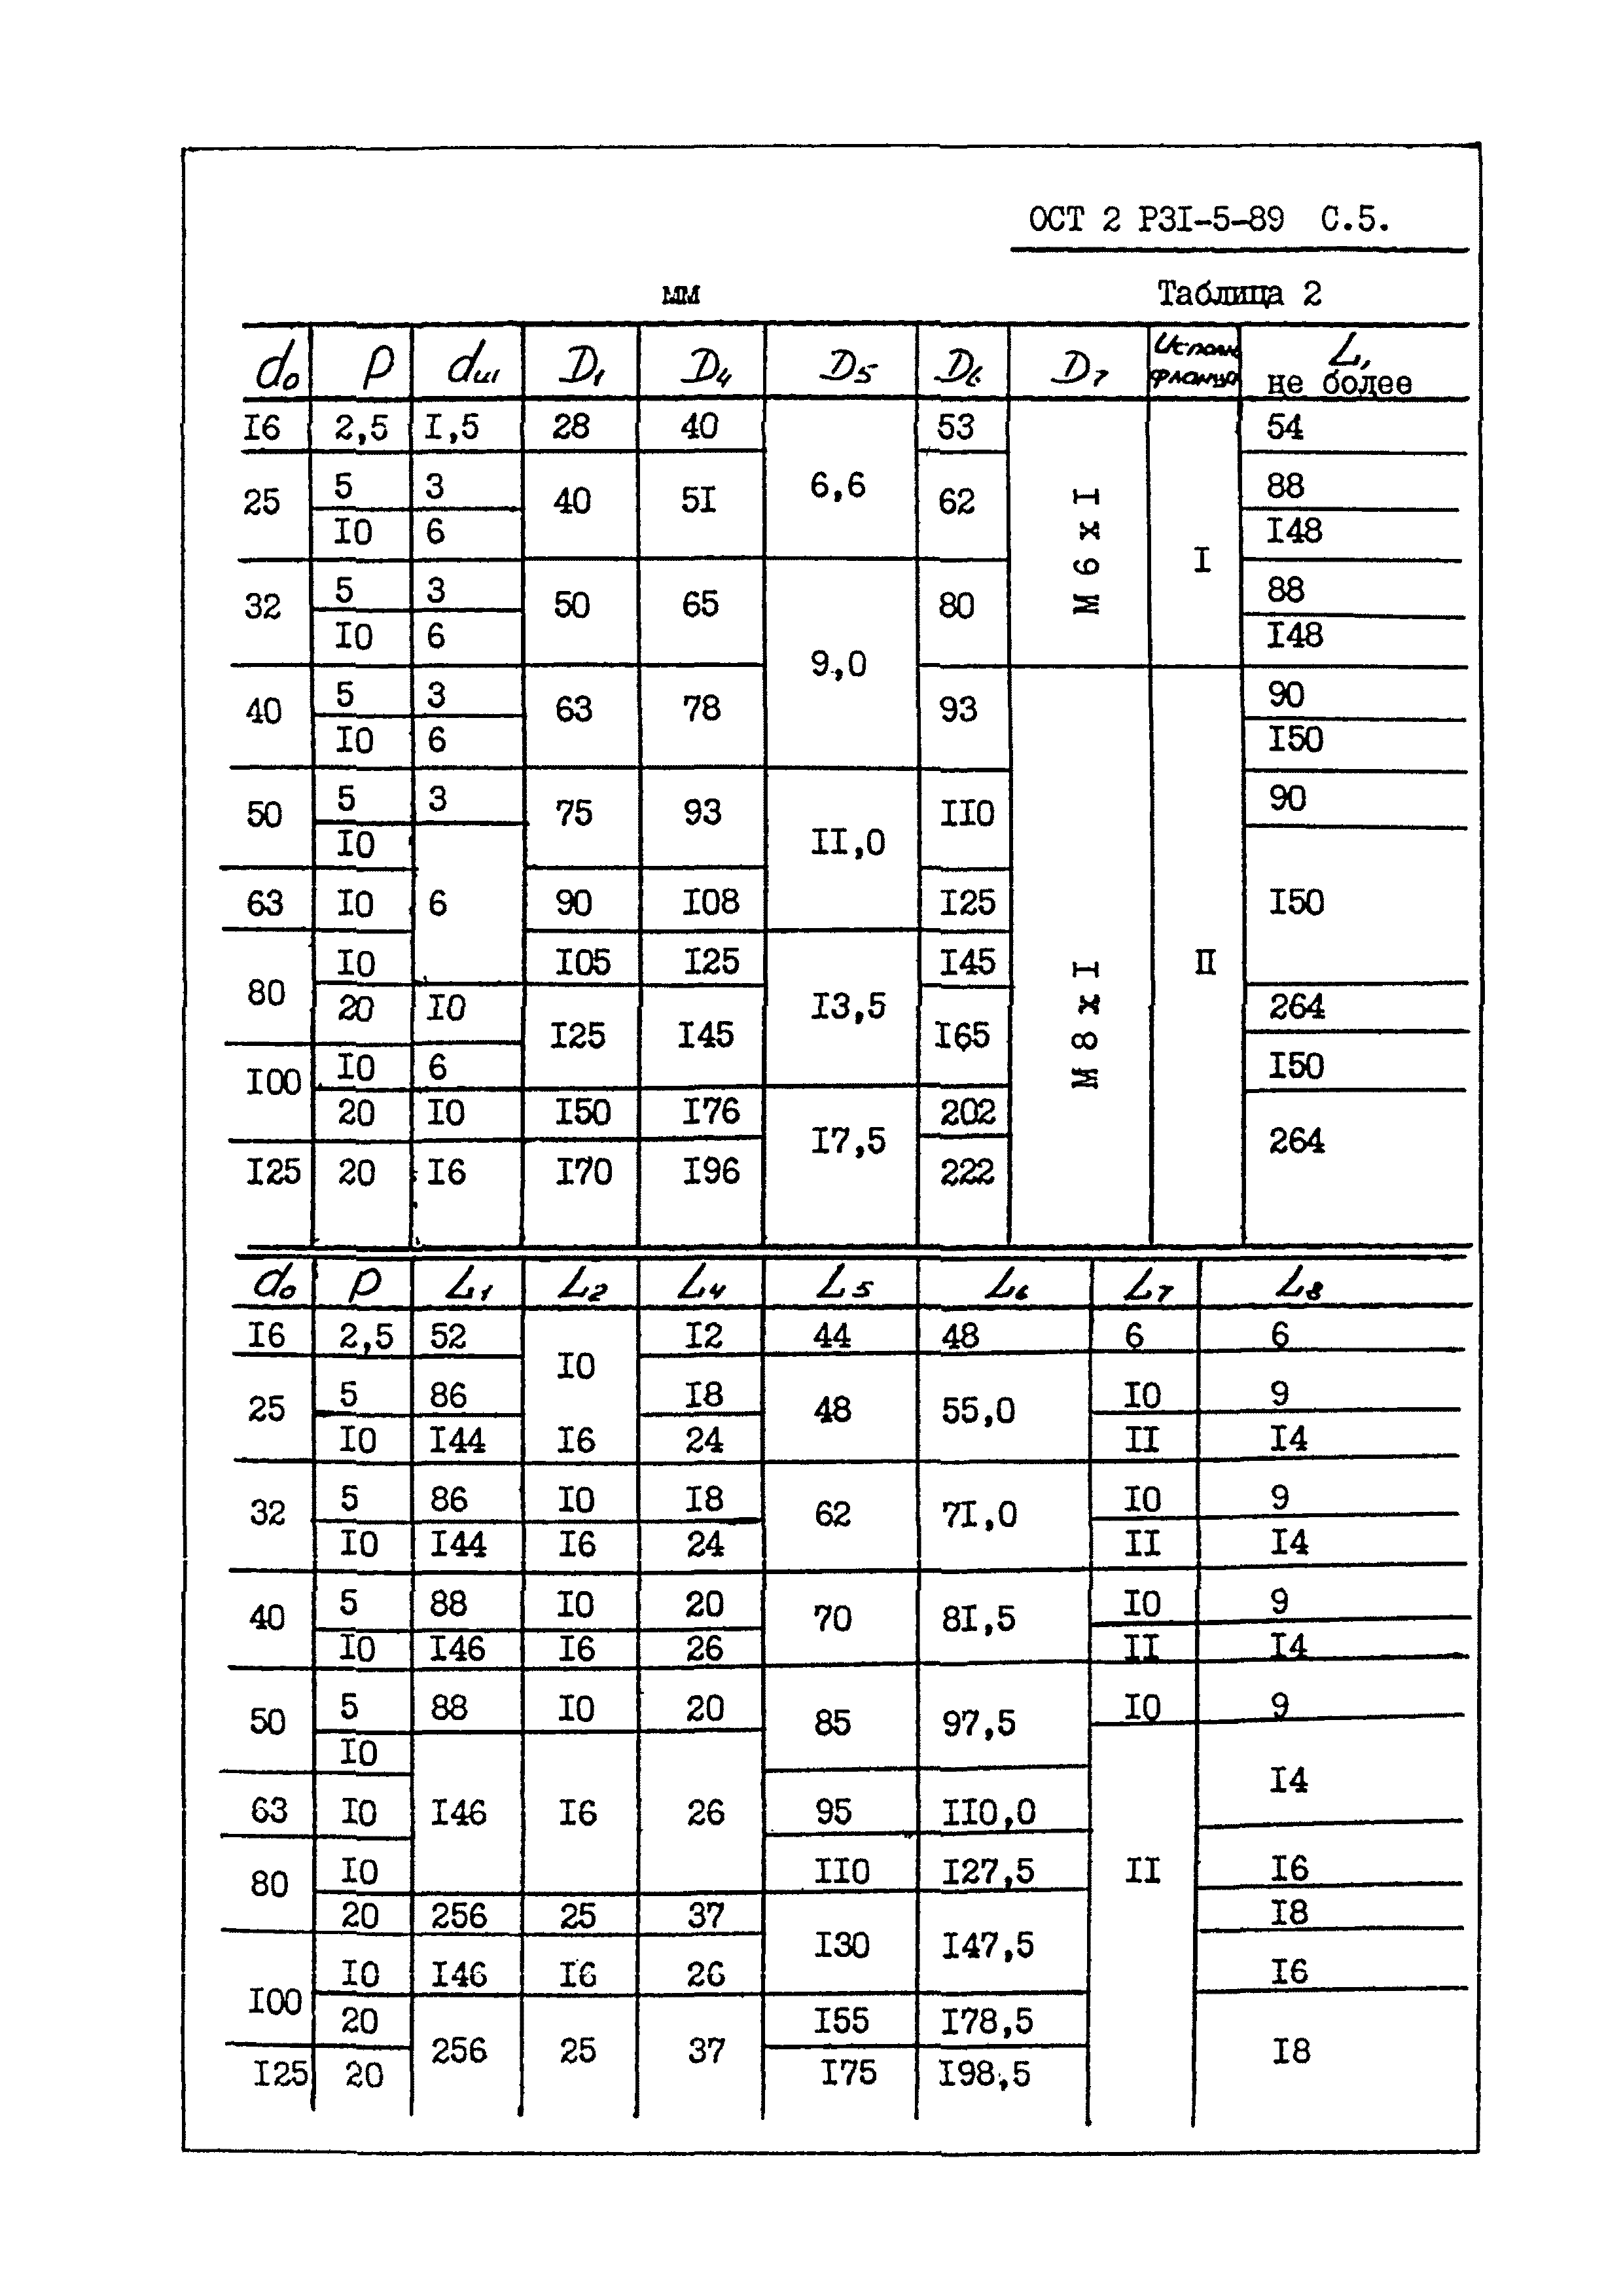 ОСТ 2 Р31-5-89